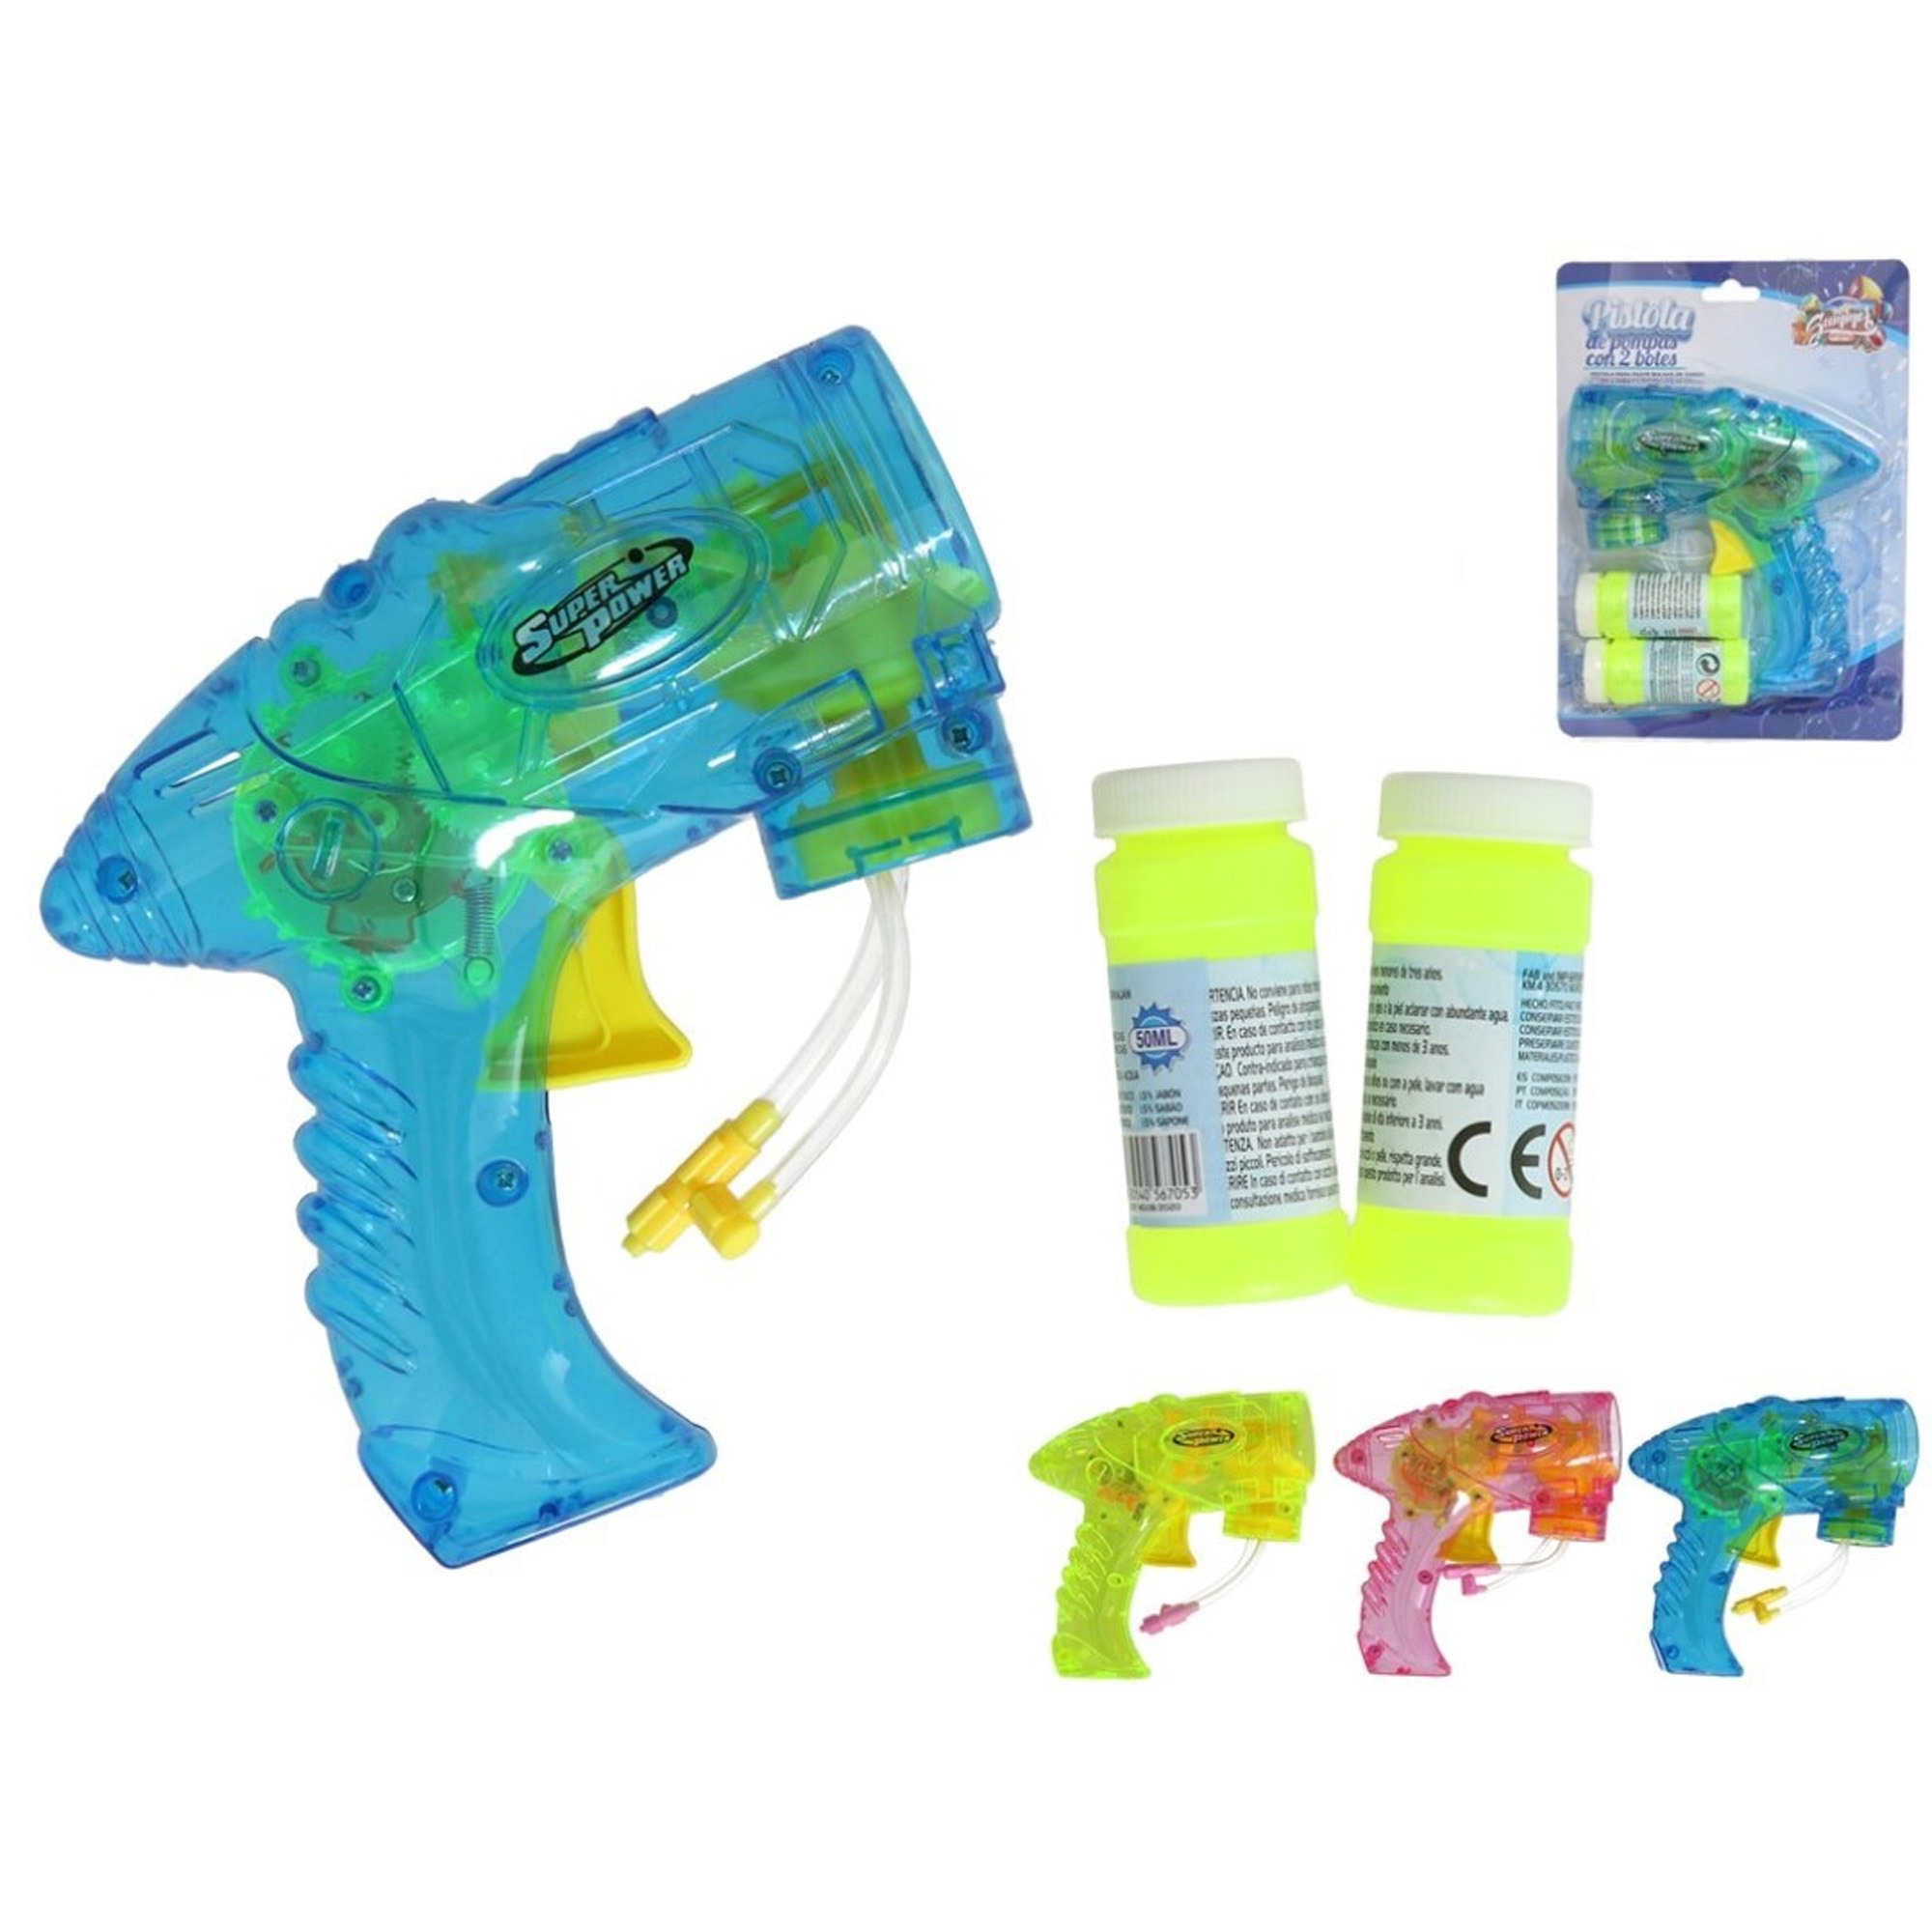 Bellenblaas speelgoed pistool met vullingen groen 15 cm plastic bellen blazen